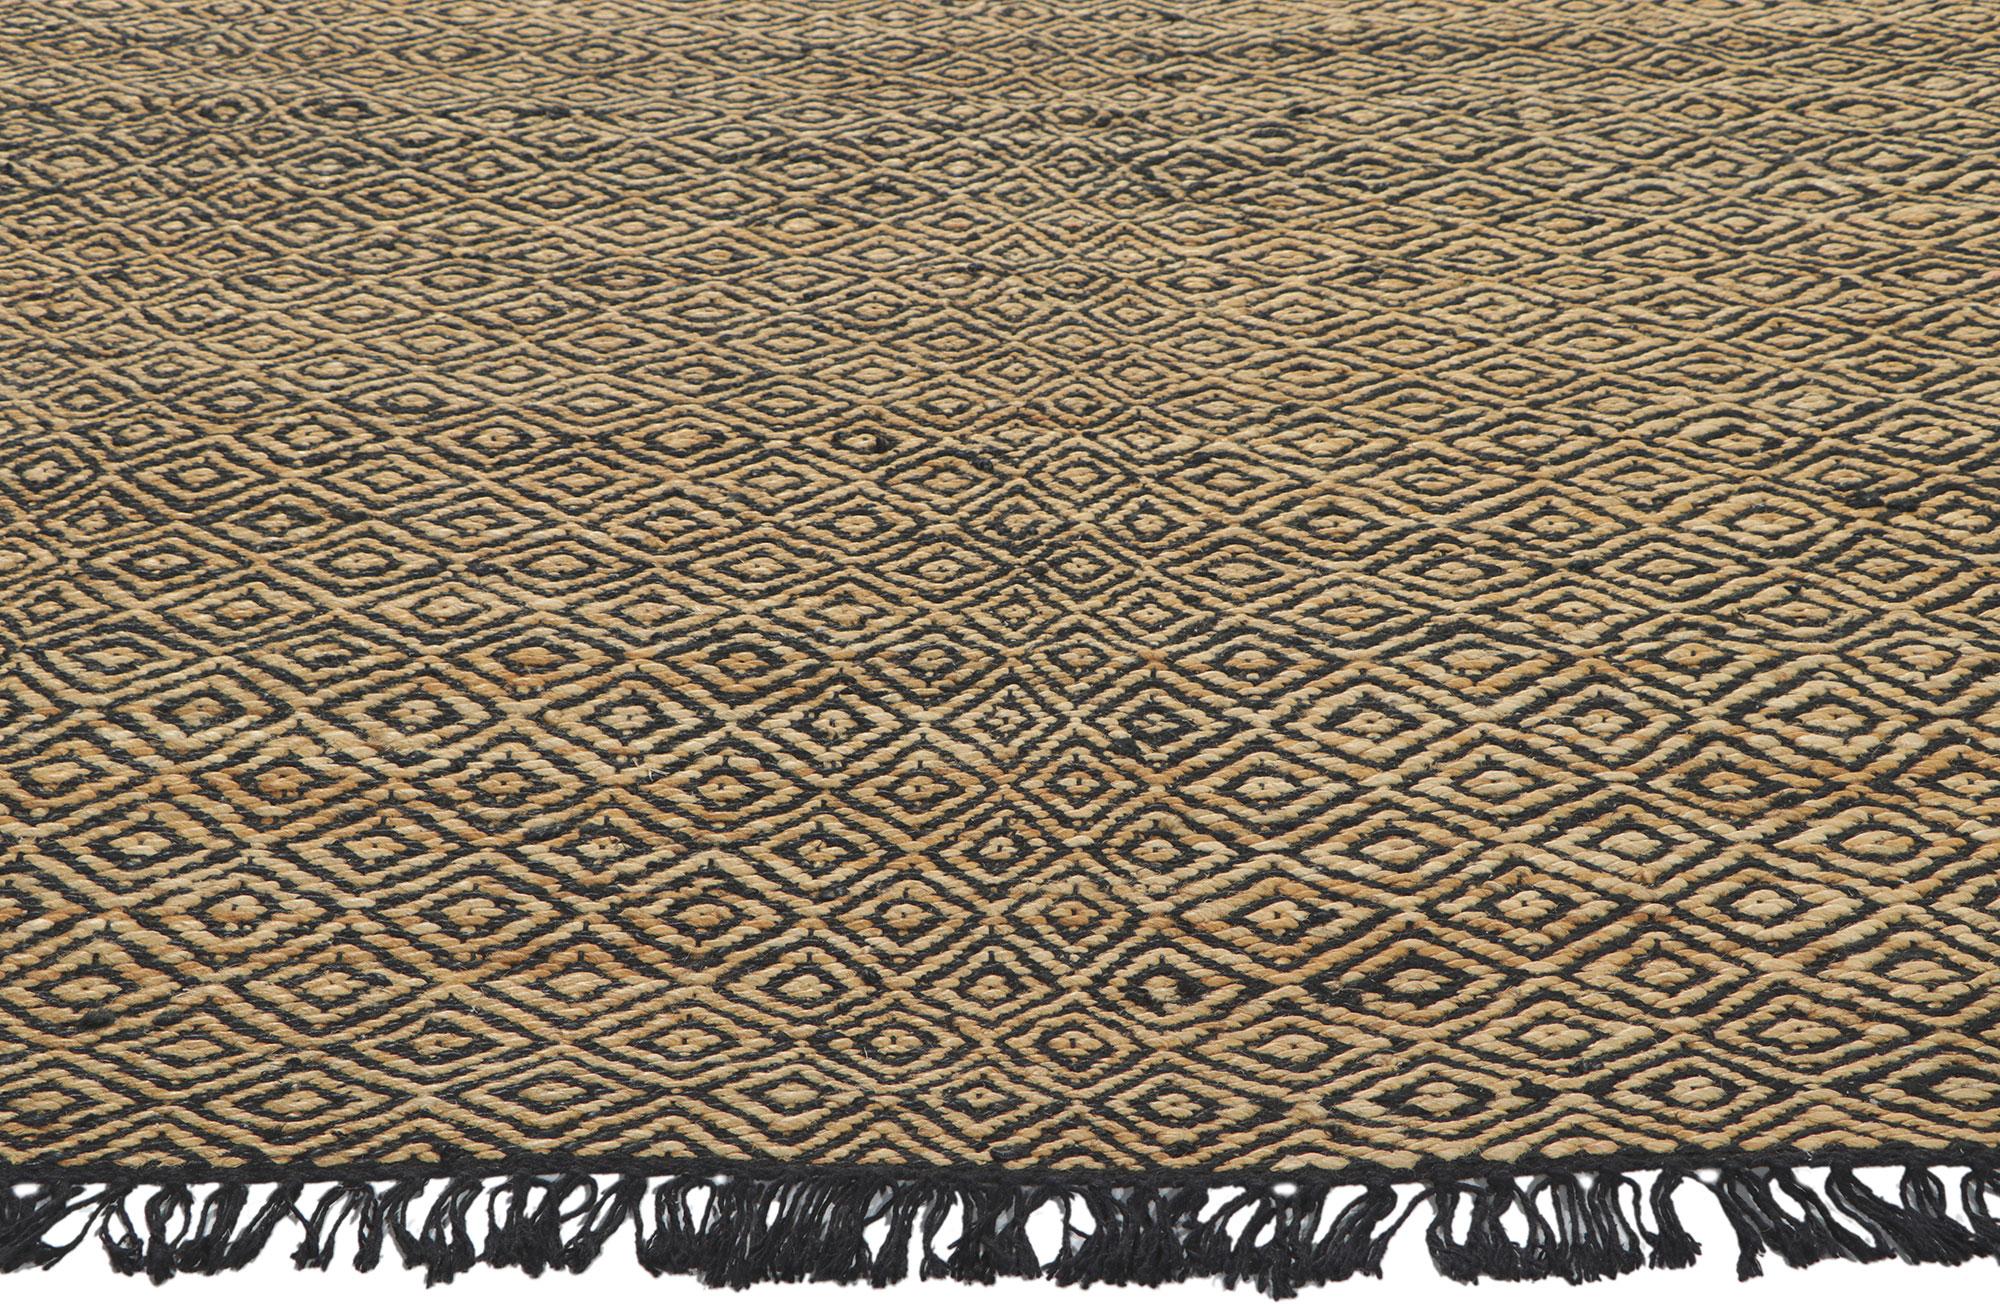 naturals - handwoven jute rugs